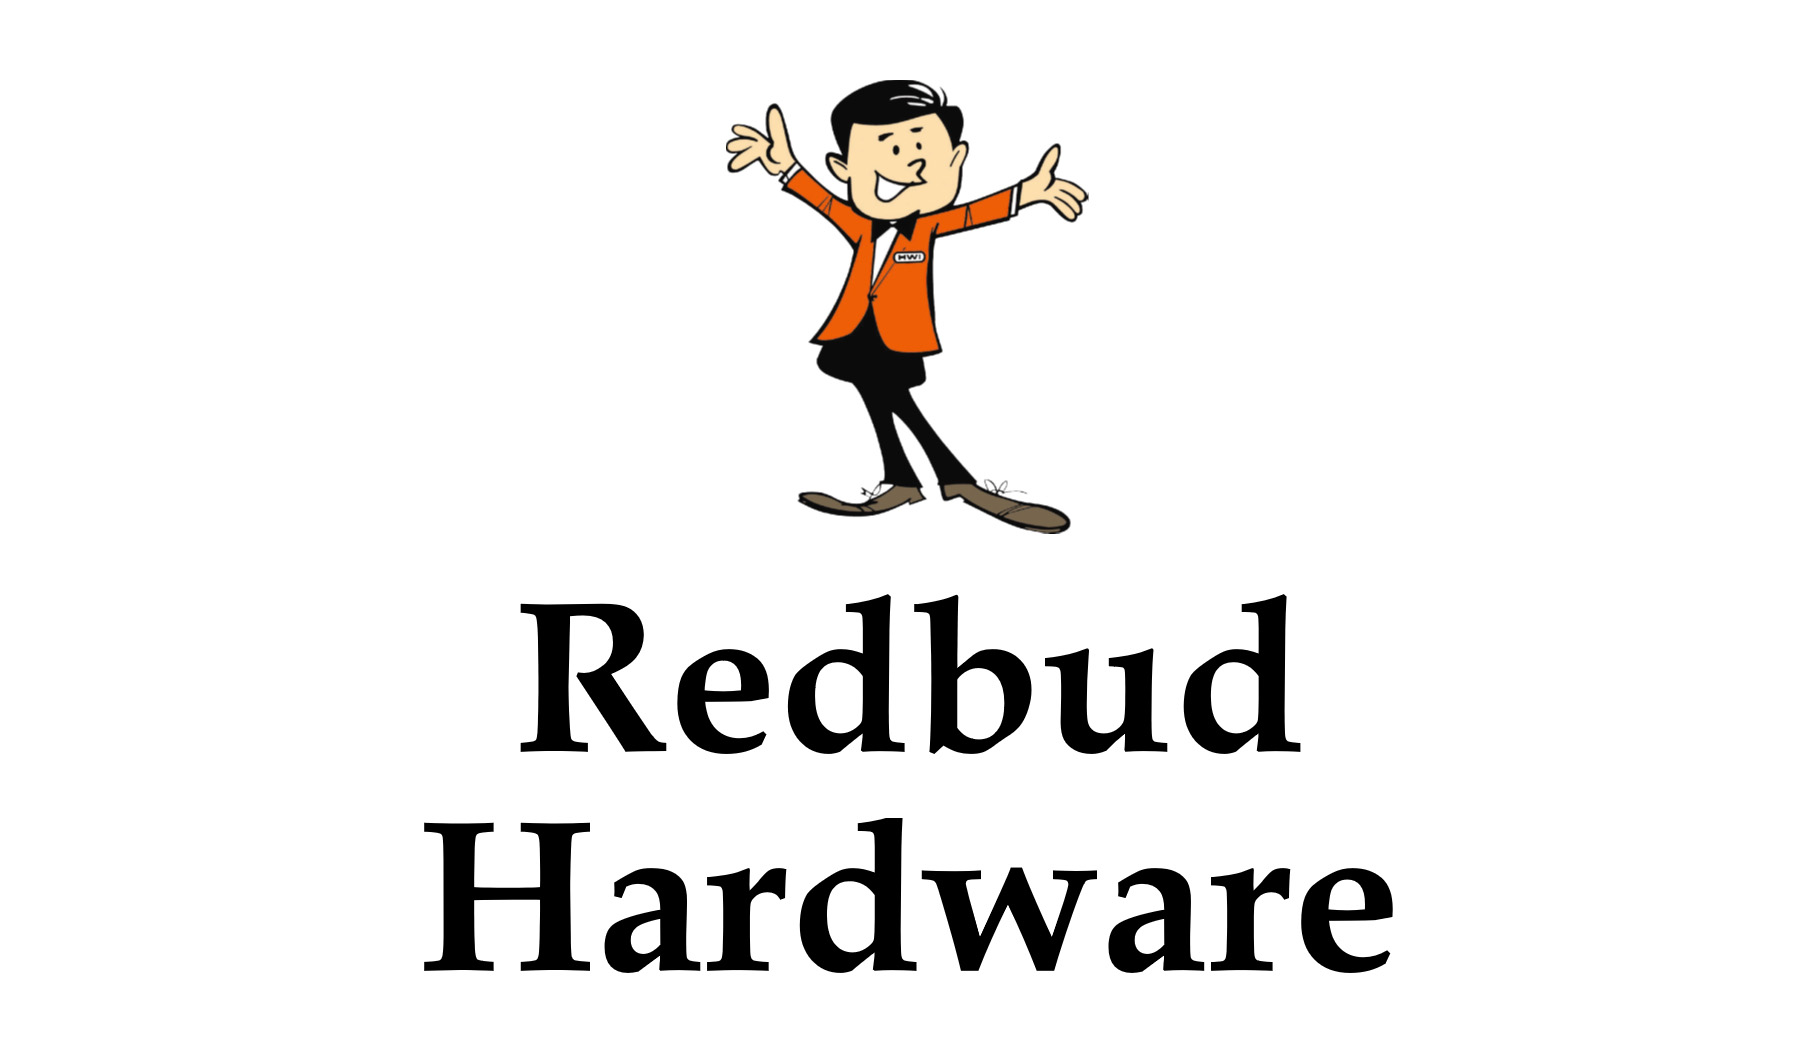 redbudhardwarestackedlogo